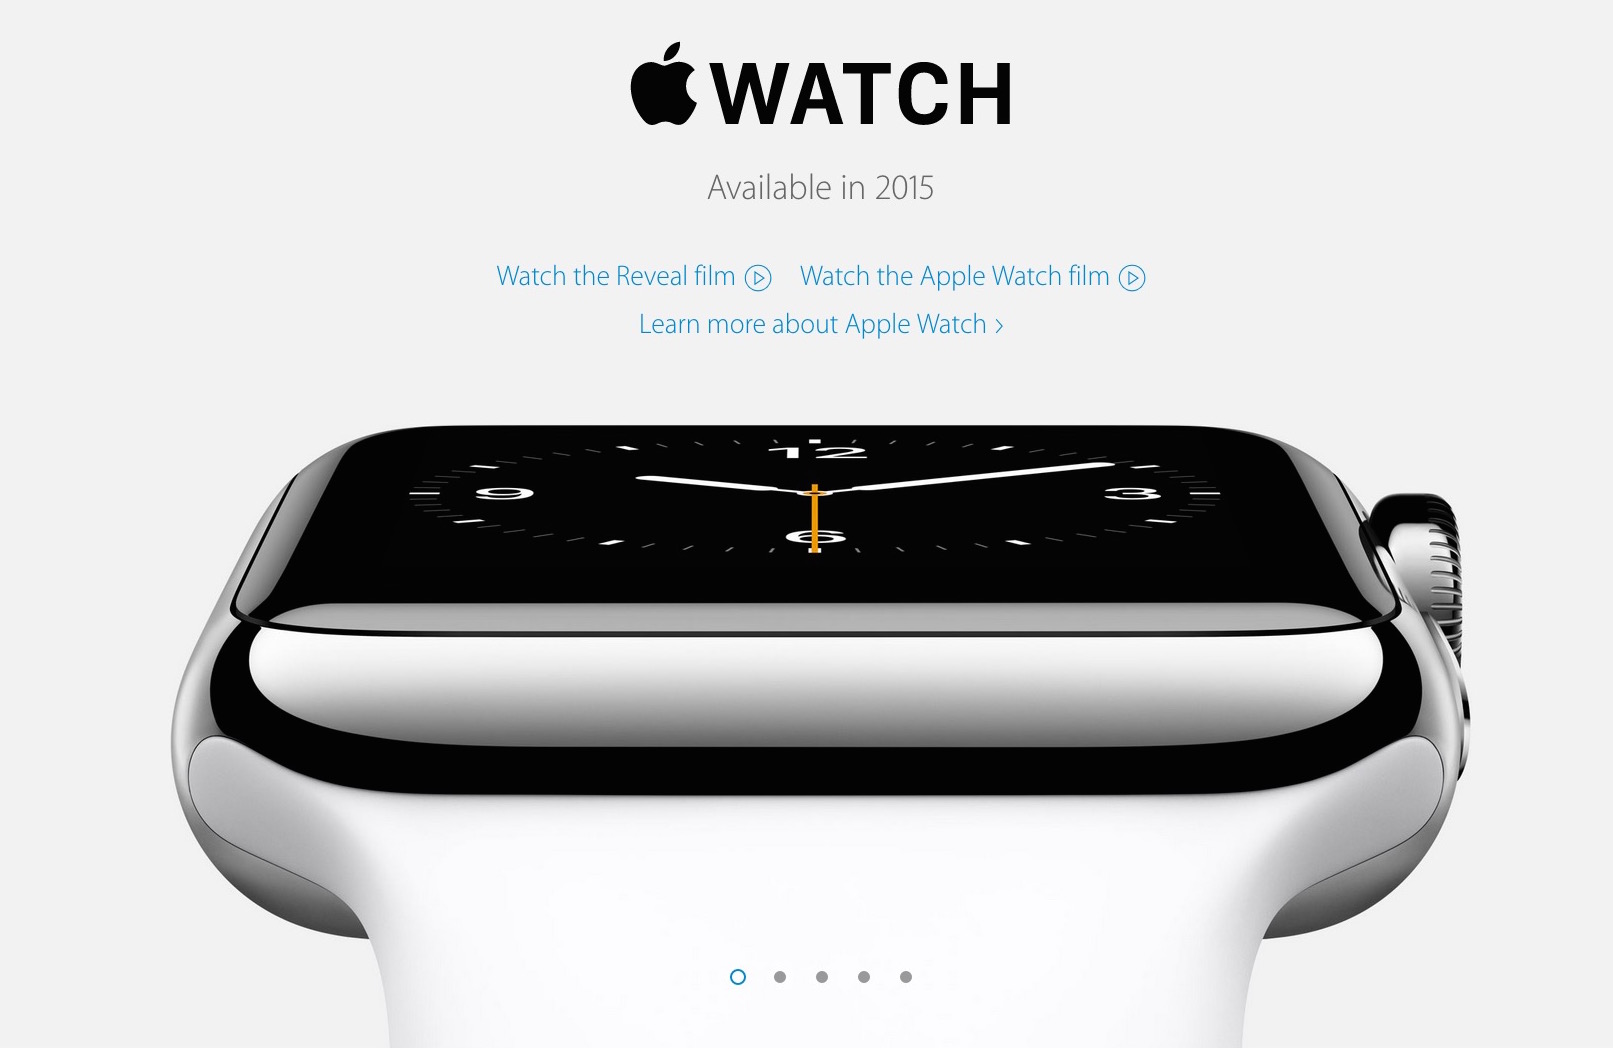 イギリス向けのApple Watch公式ページでは「2015年に発売」に再度、変更されている